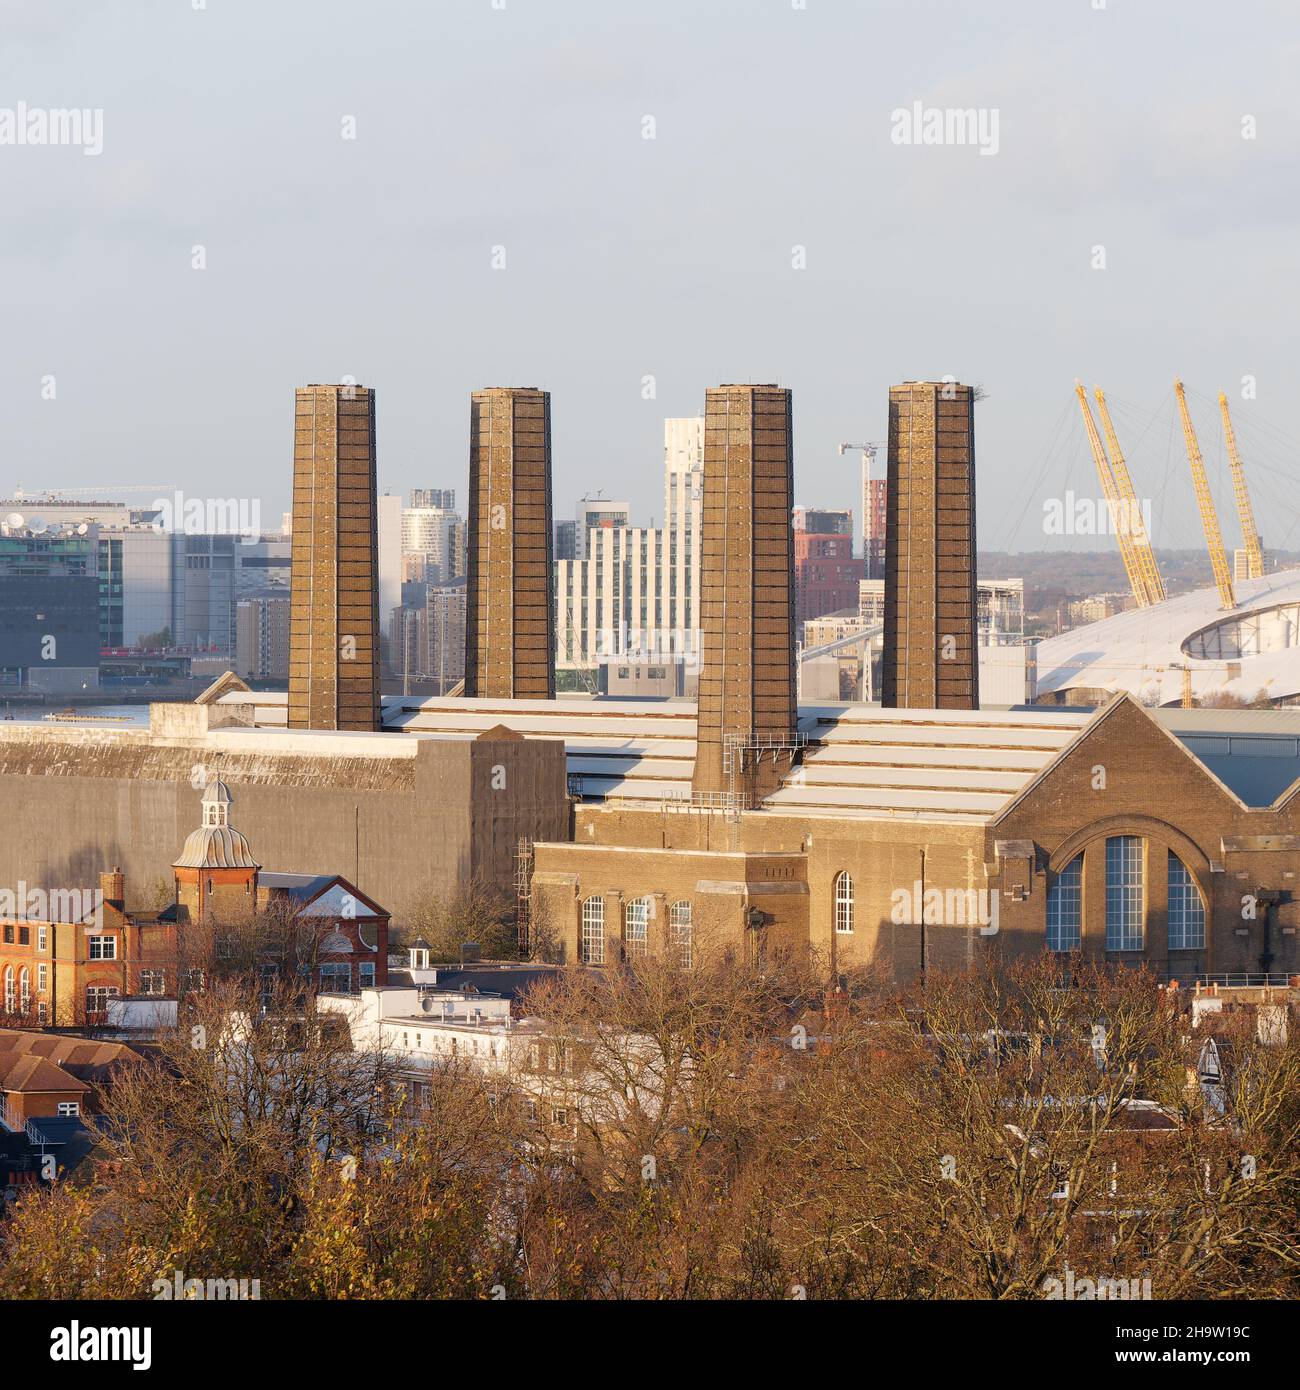 Londra, Greater London, Inghilterra, dicembre 04 2021: Edificio con quattro camini distintivi a Greenwich con l'edificio del O2 alle spalle. Foto Stock